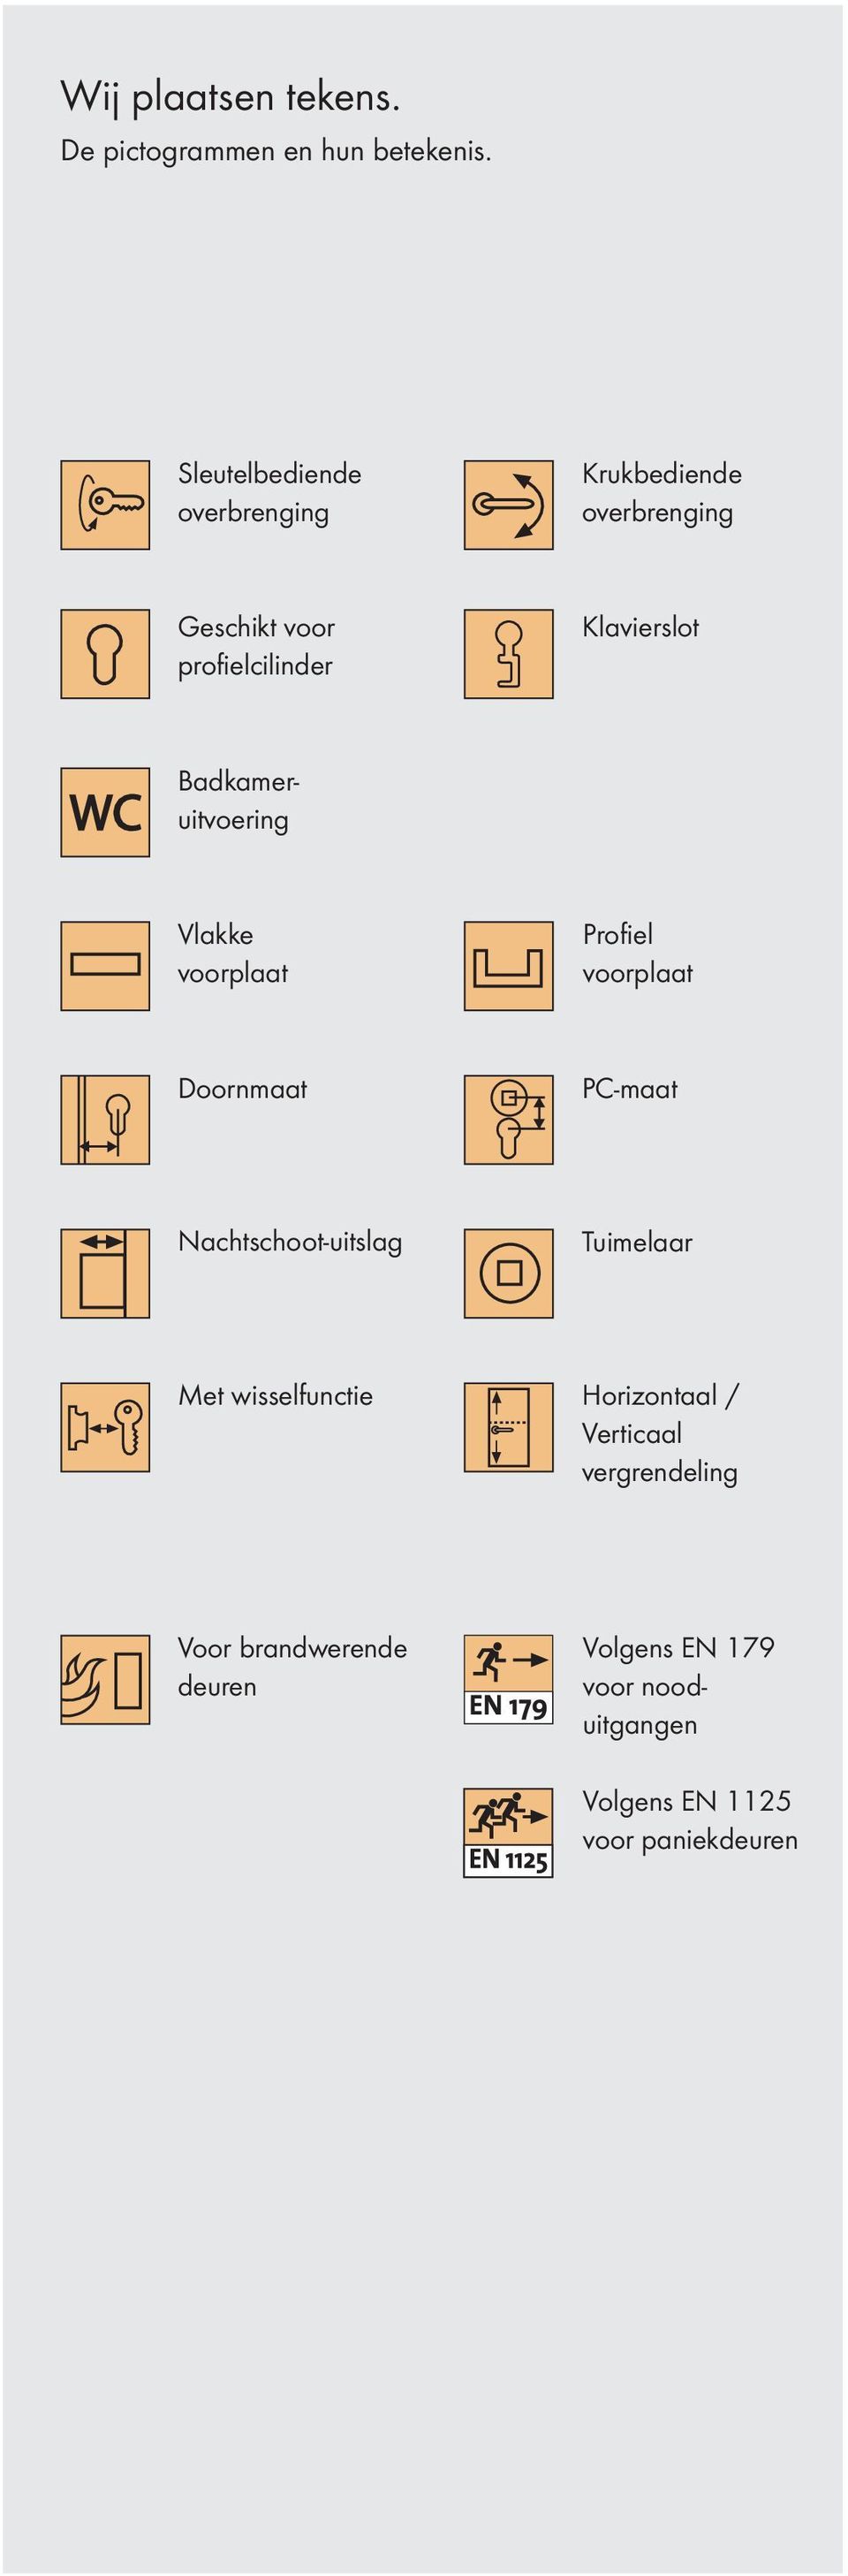 Badkameruitvoering Vlakke voorplaat Profiel voorplaat Doornmaat PC-maat Nachtschoot-uitslag